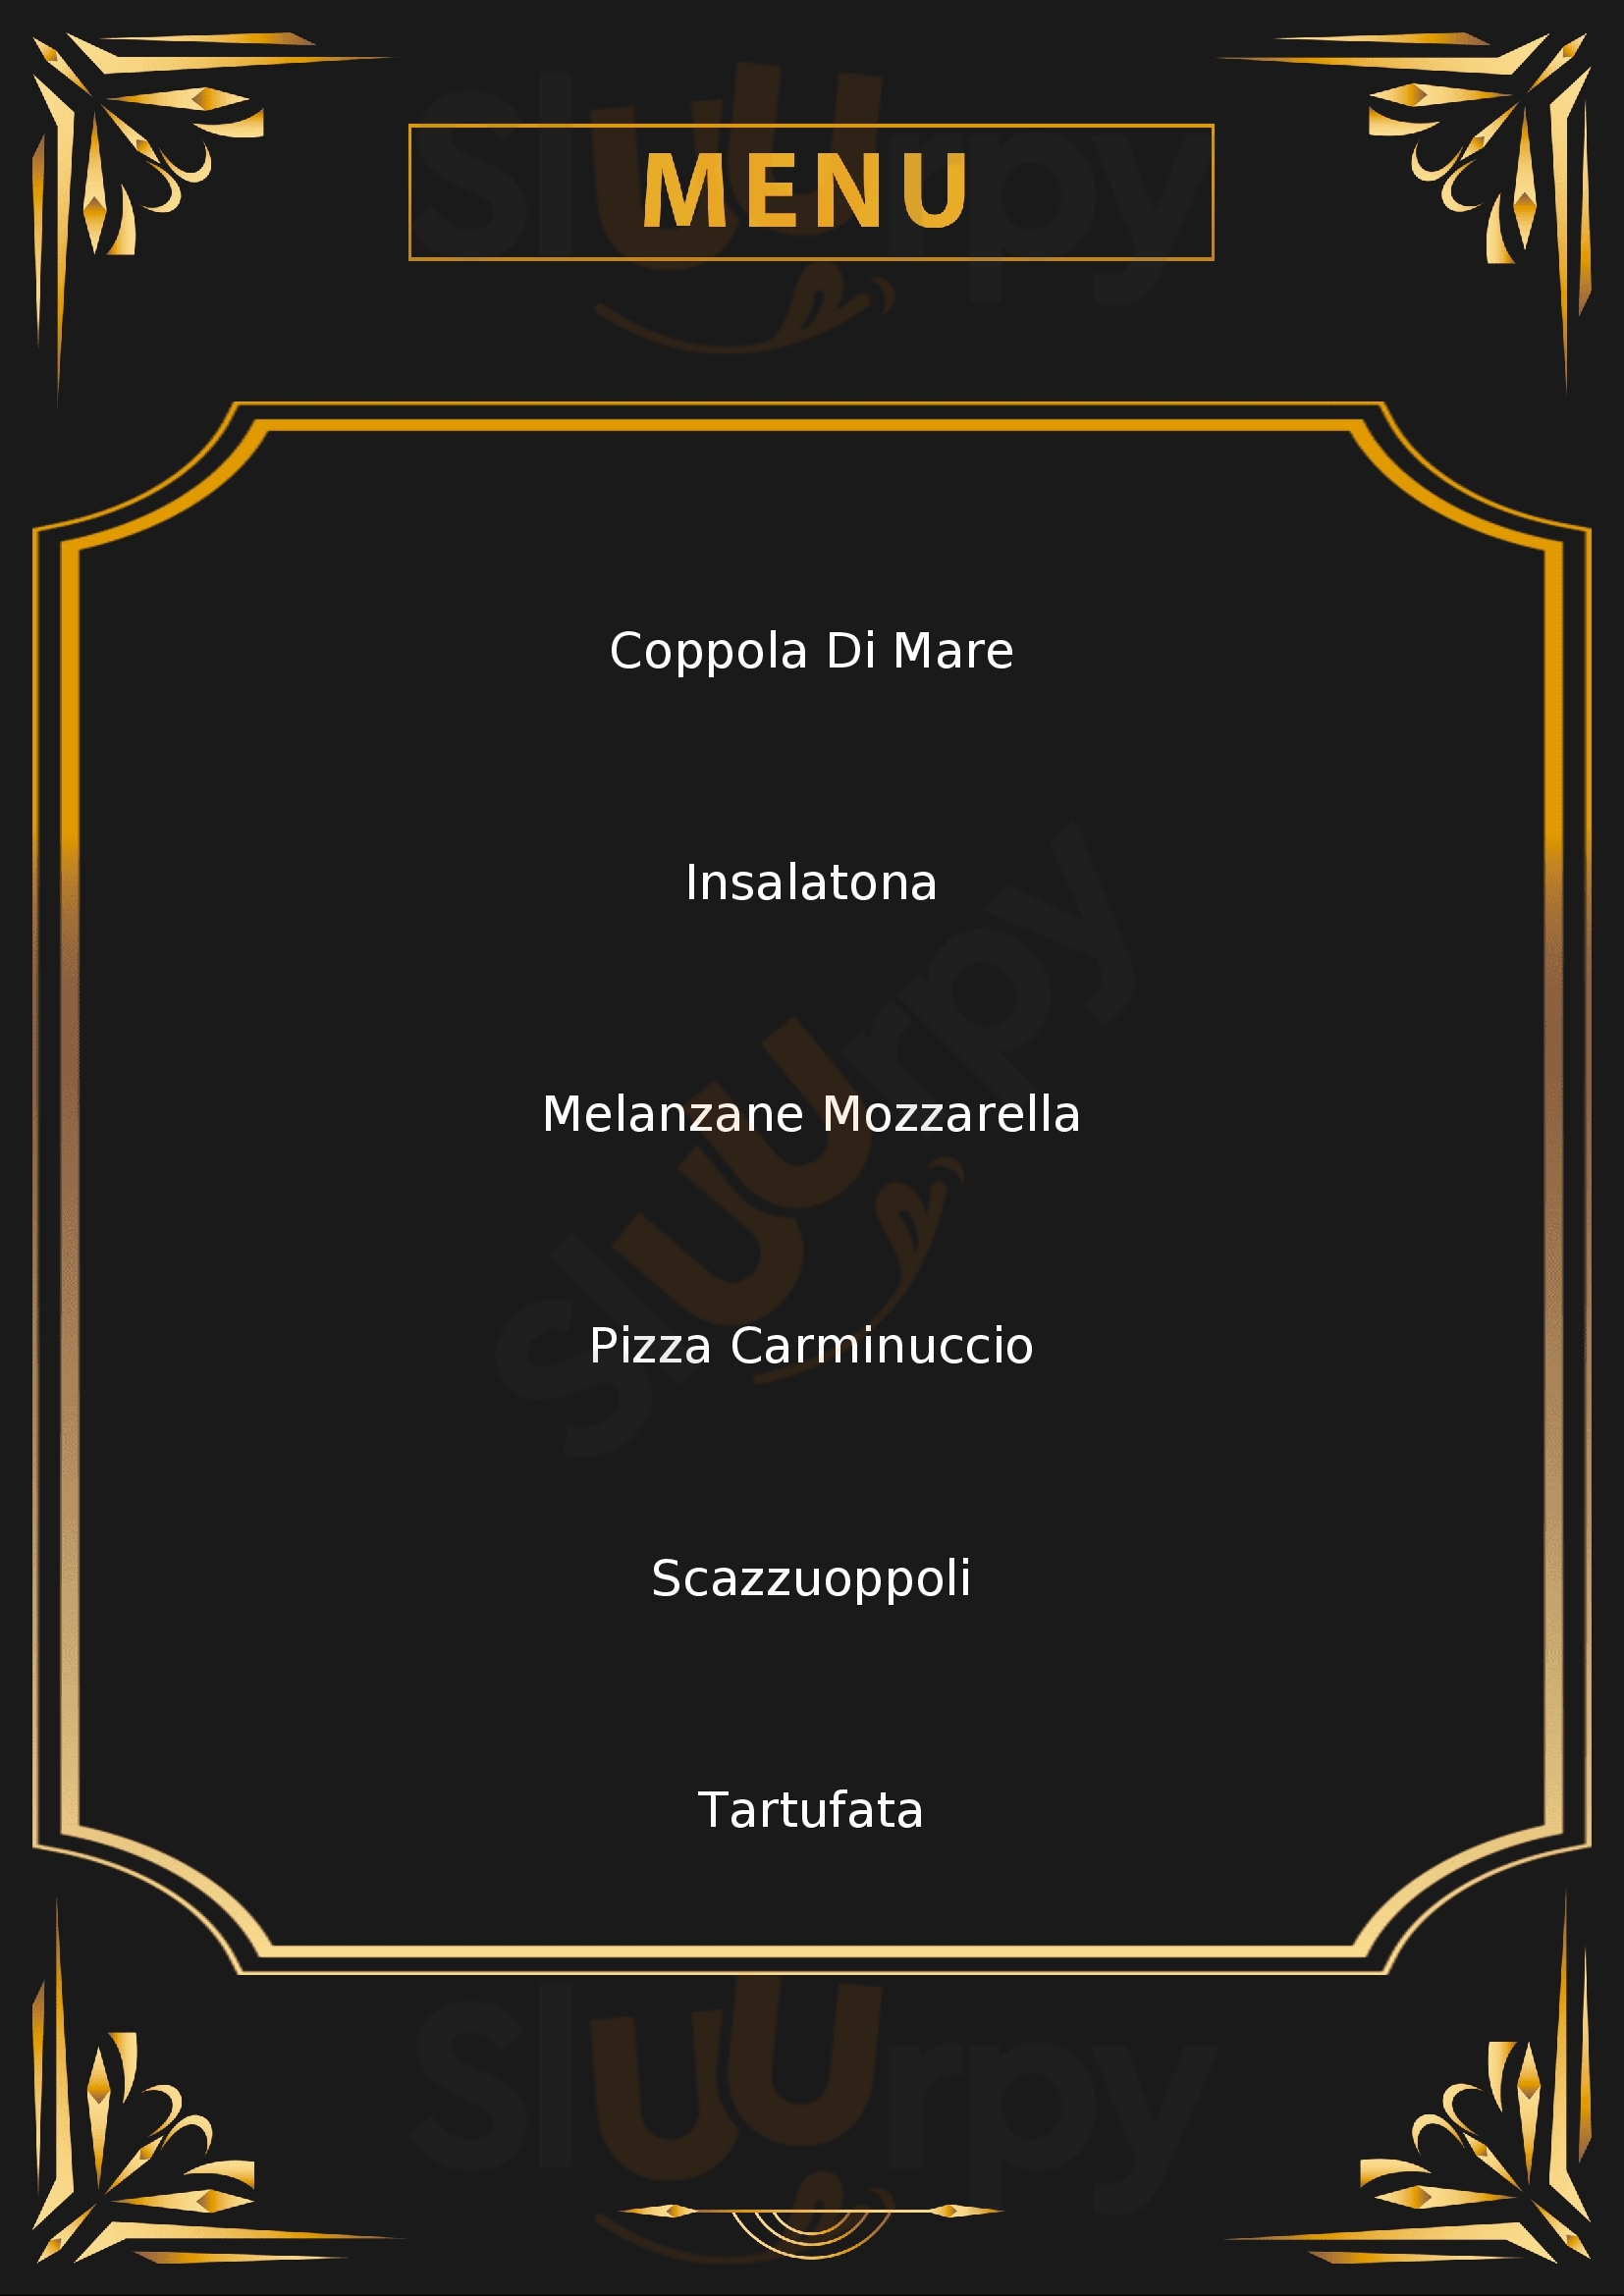 Pizzeria Trattoria da Riccardo Salerno menù 1 pagina